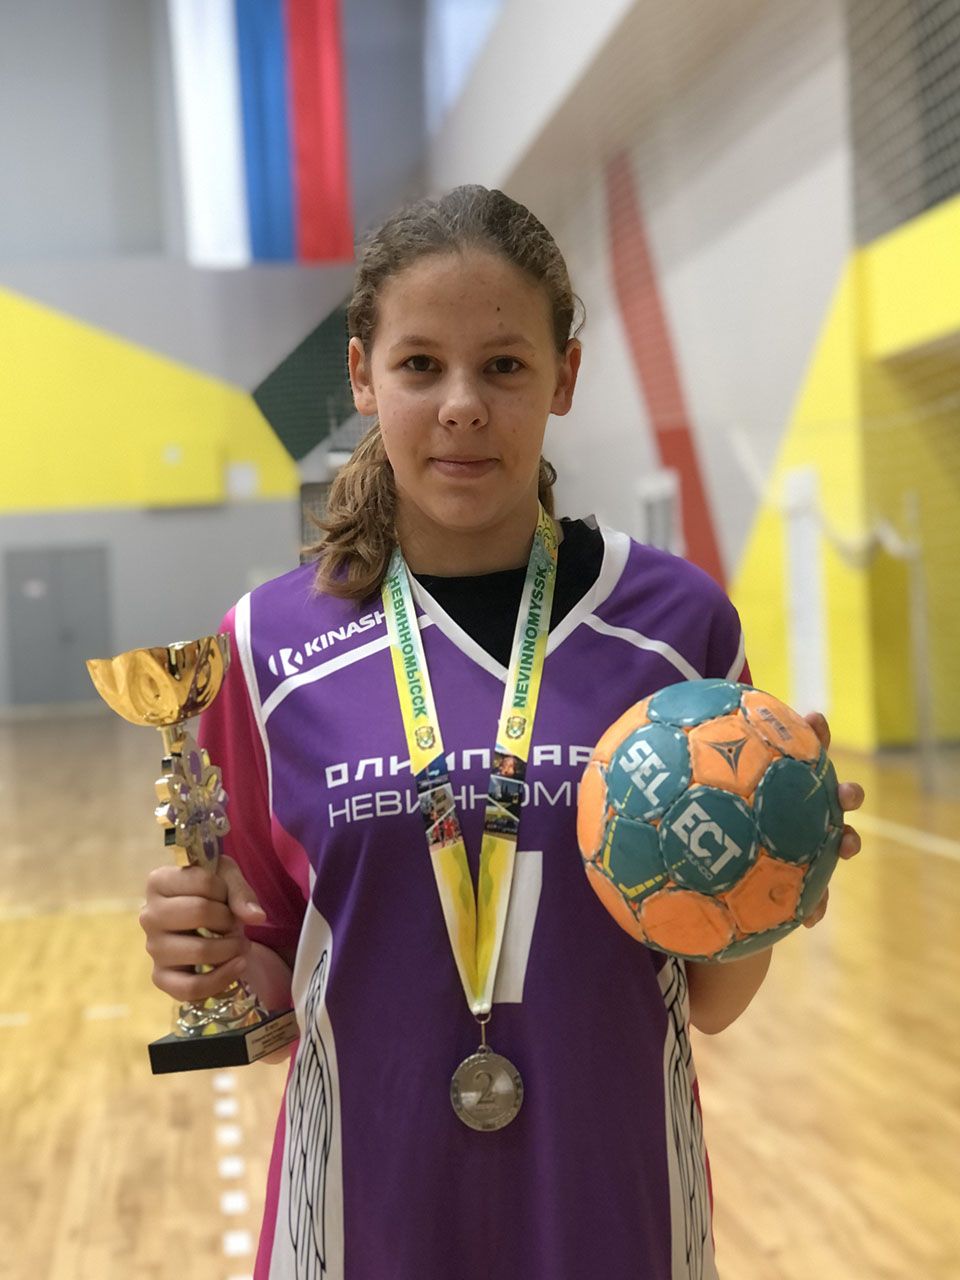 Кира Сырцова благотворительный фонд спорт начинается с детей Невинномысск